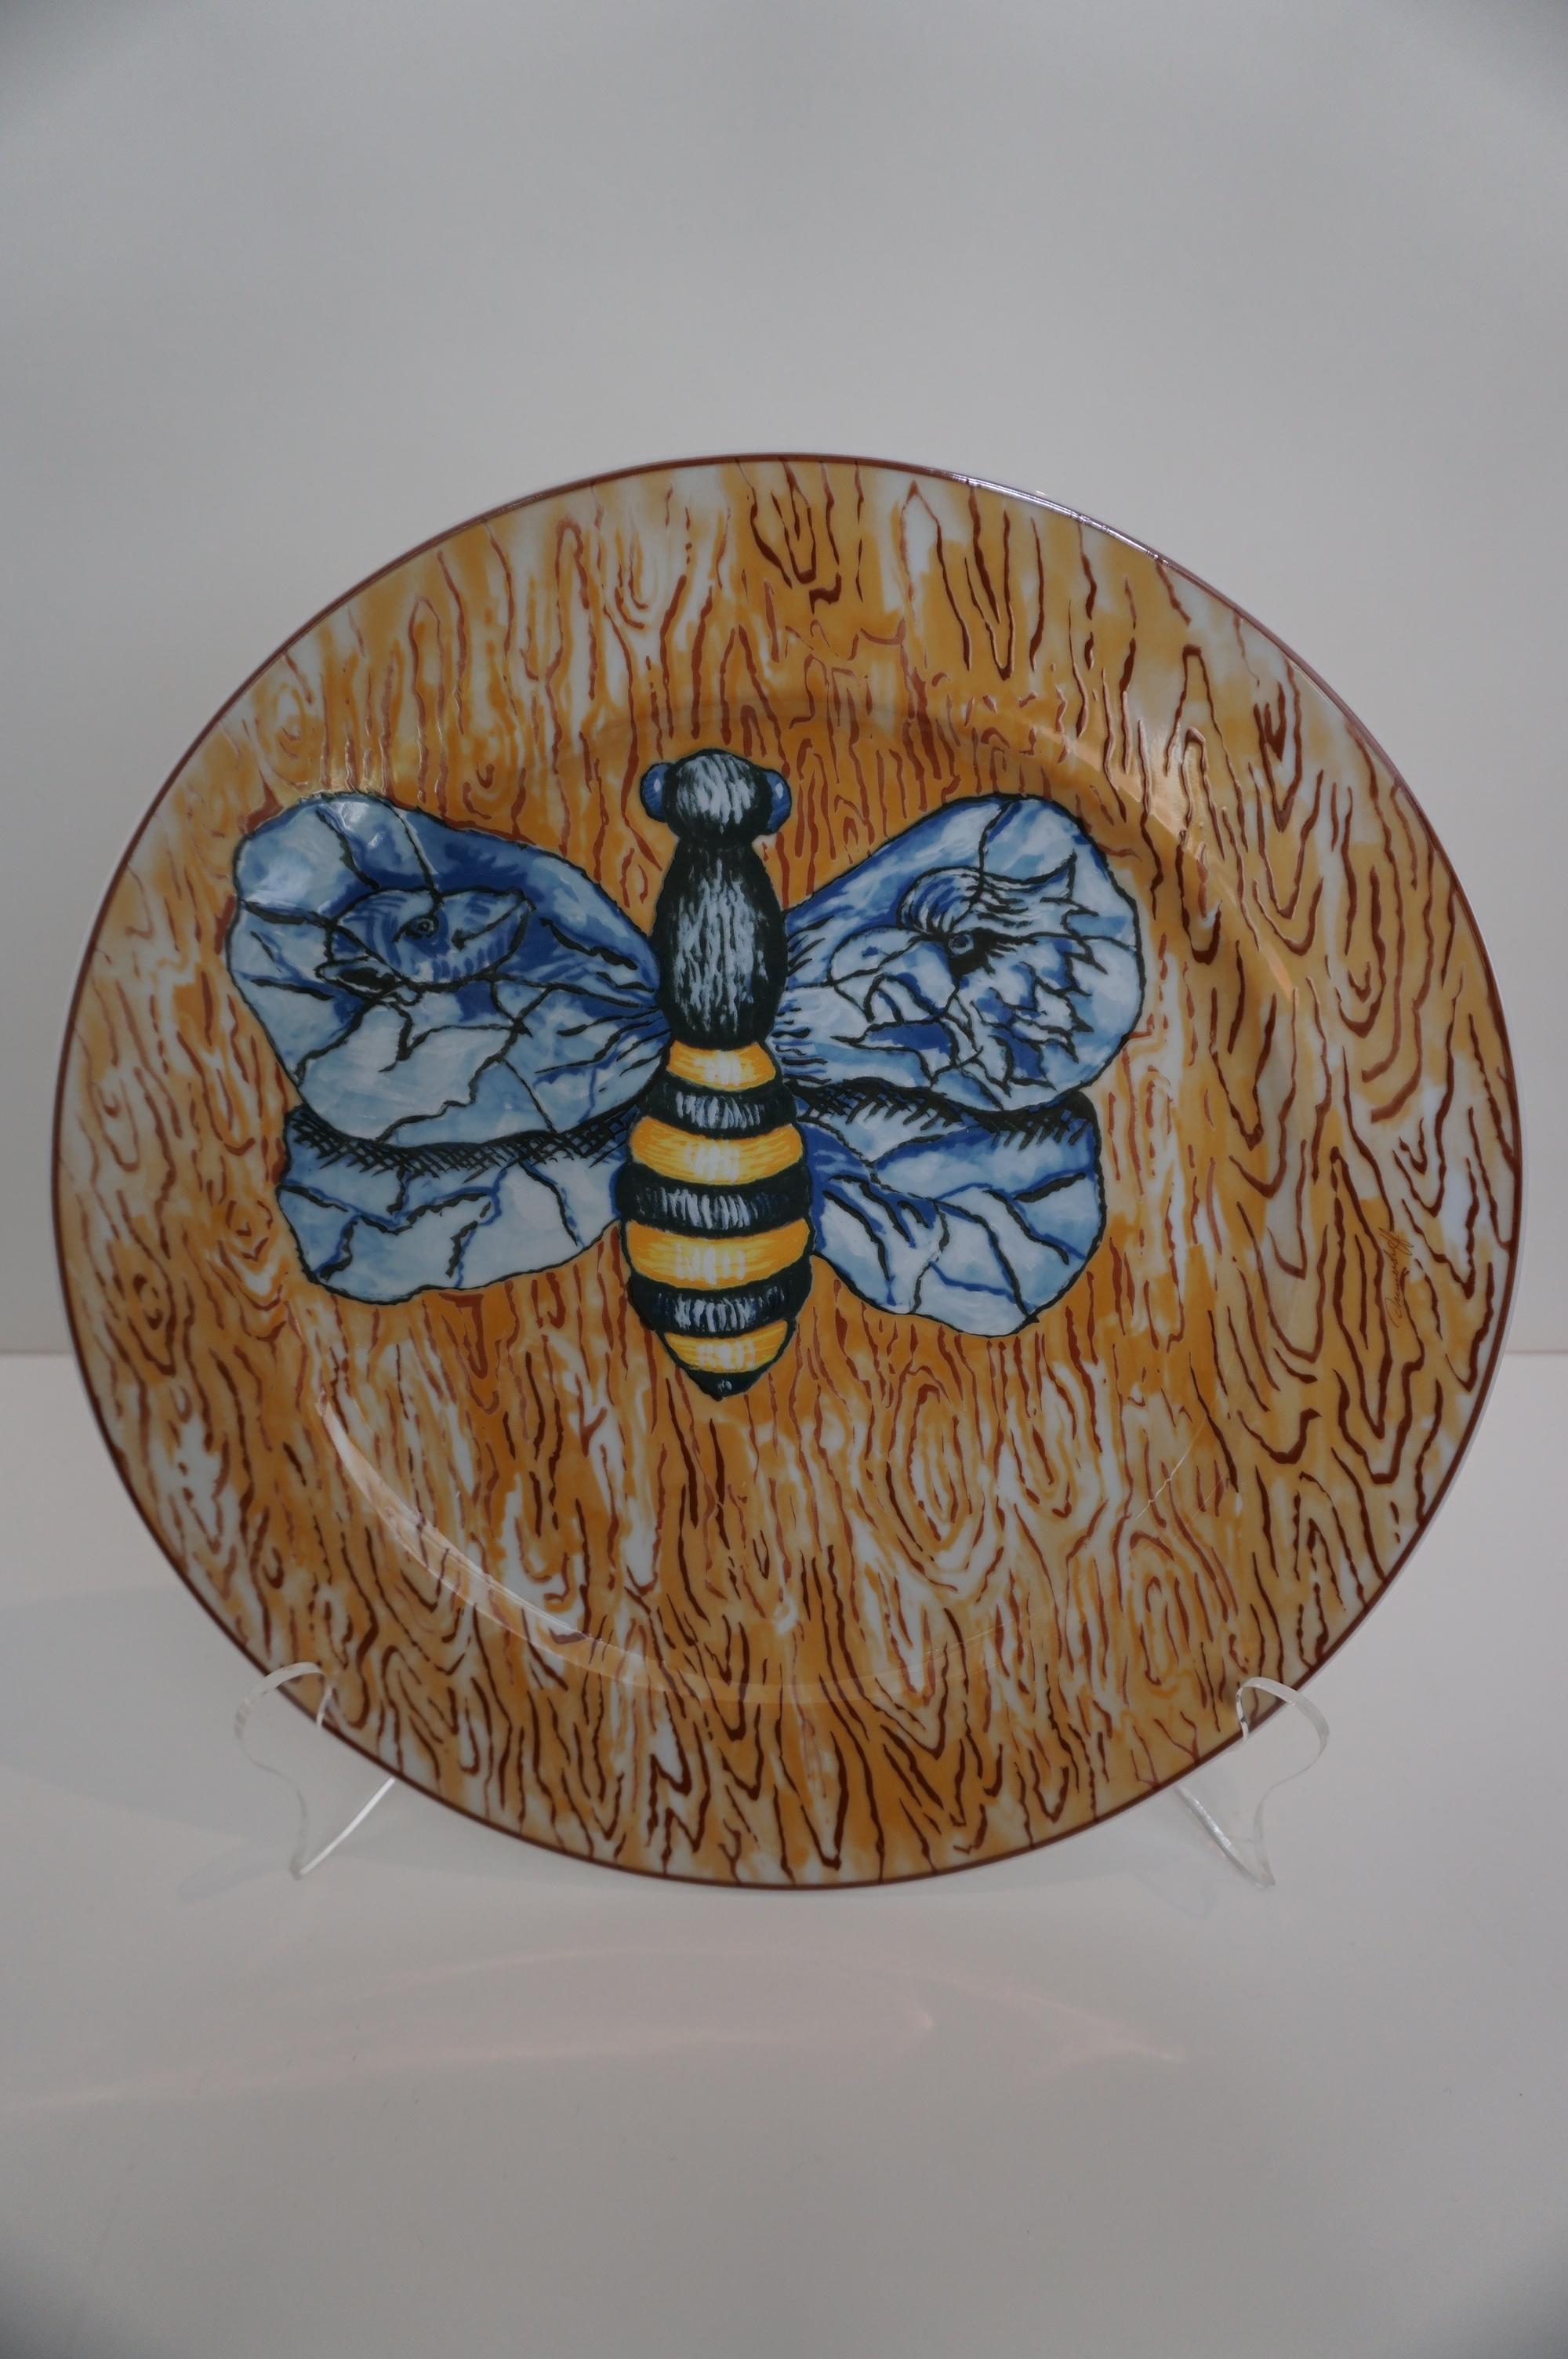 Jörg Immendorf Animal Print - "Bee on Wood" plate